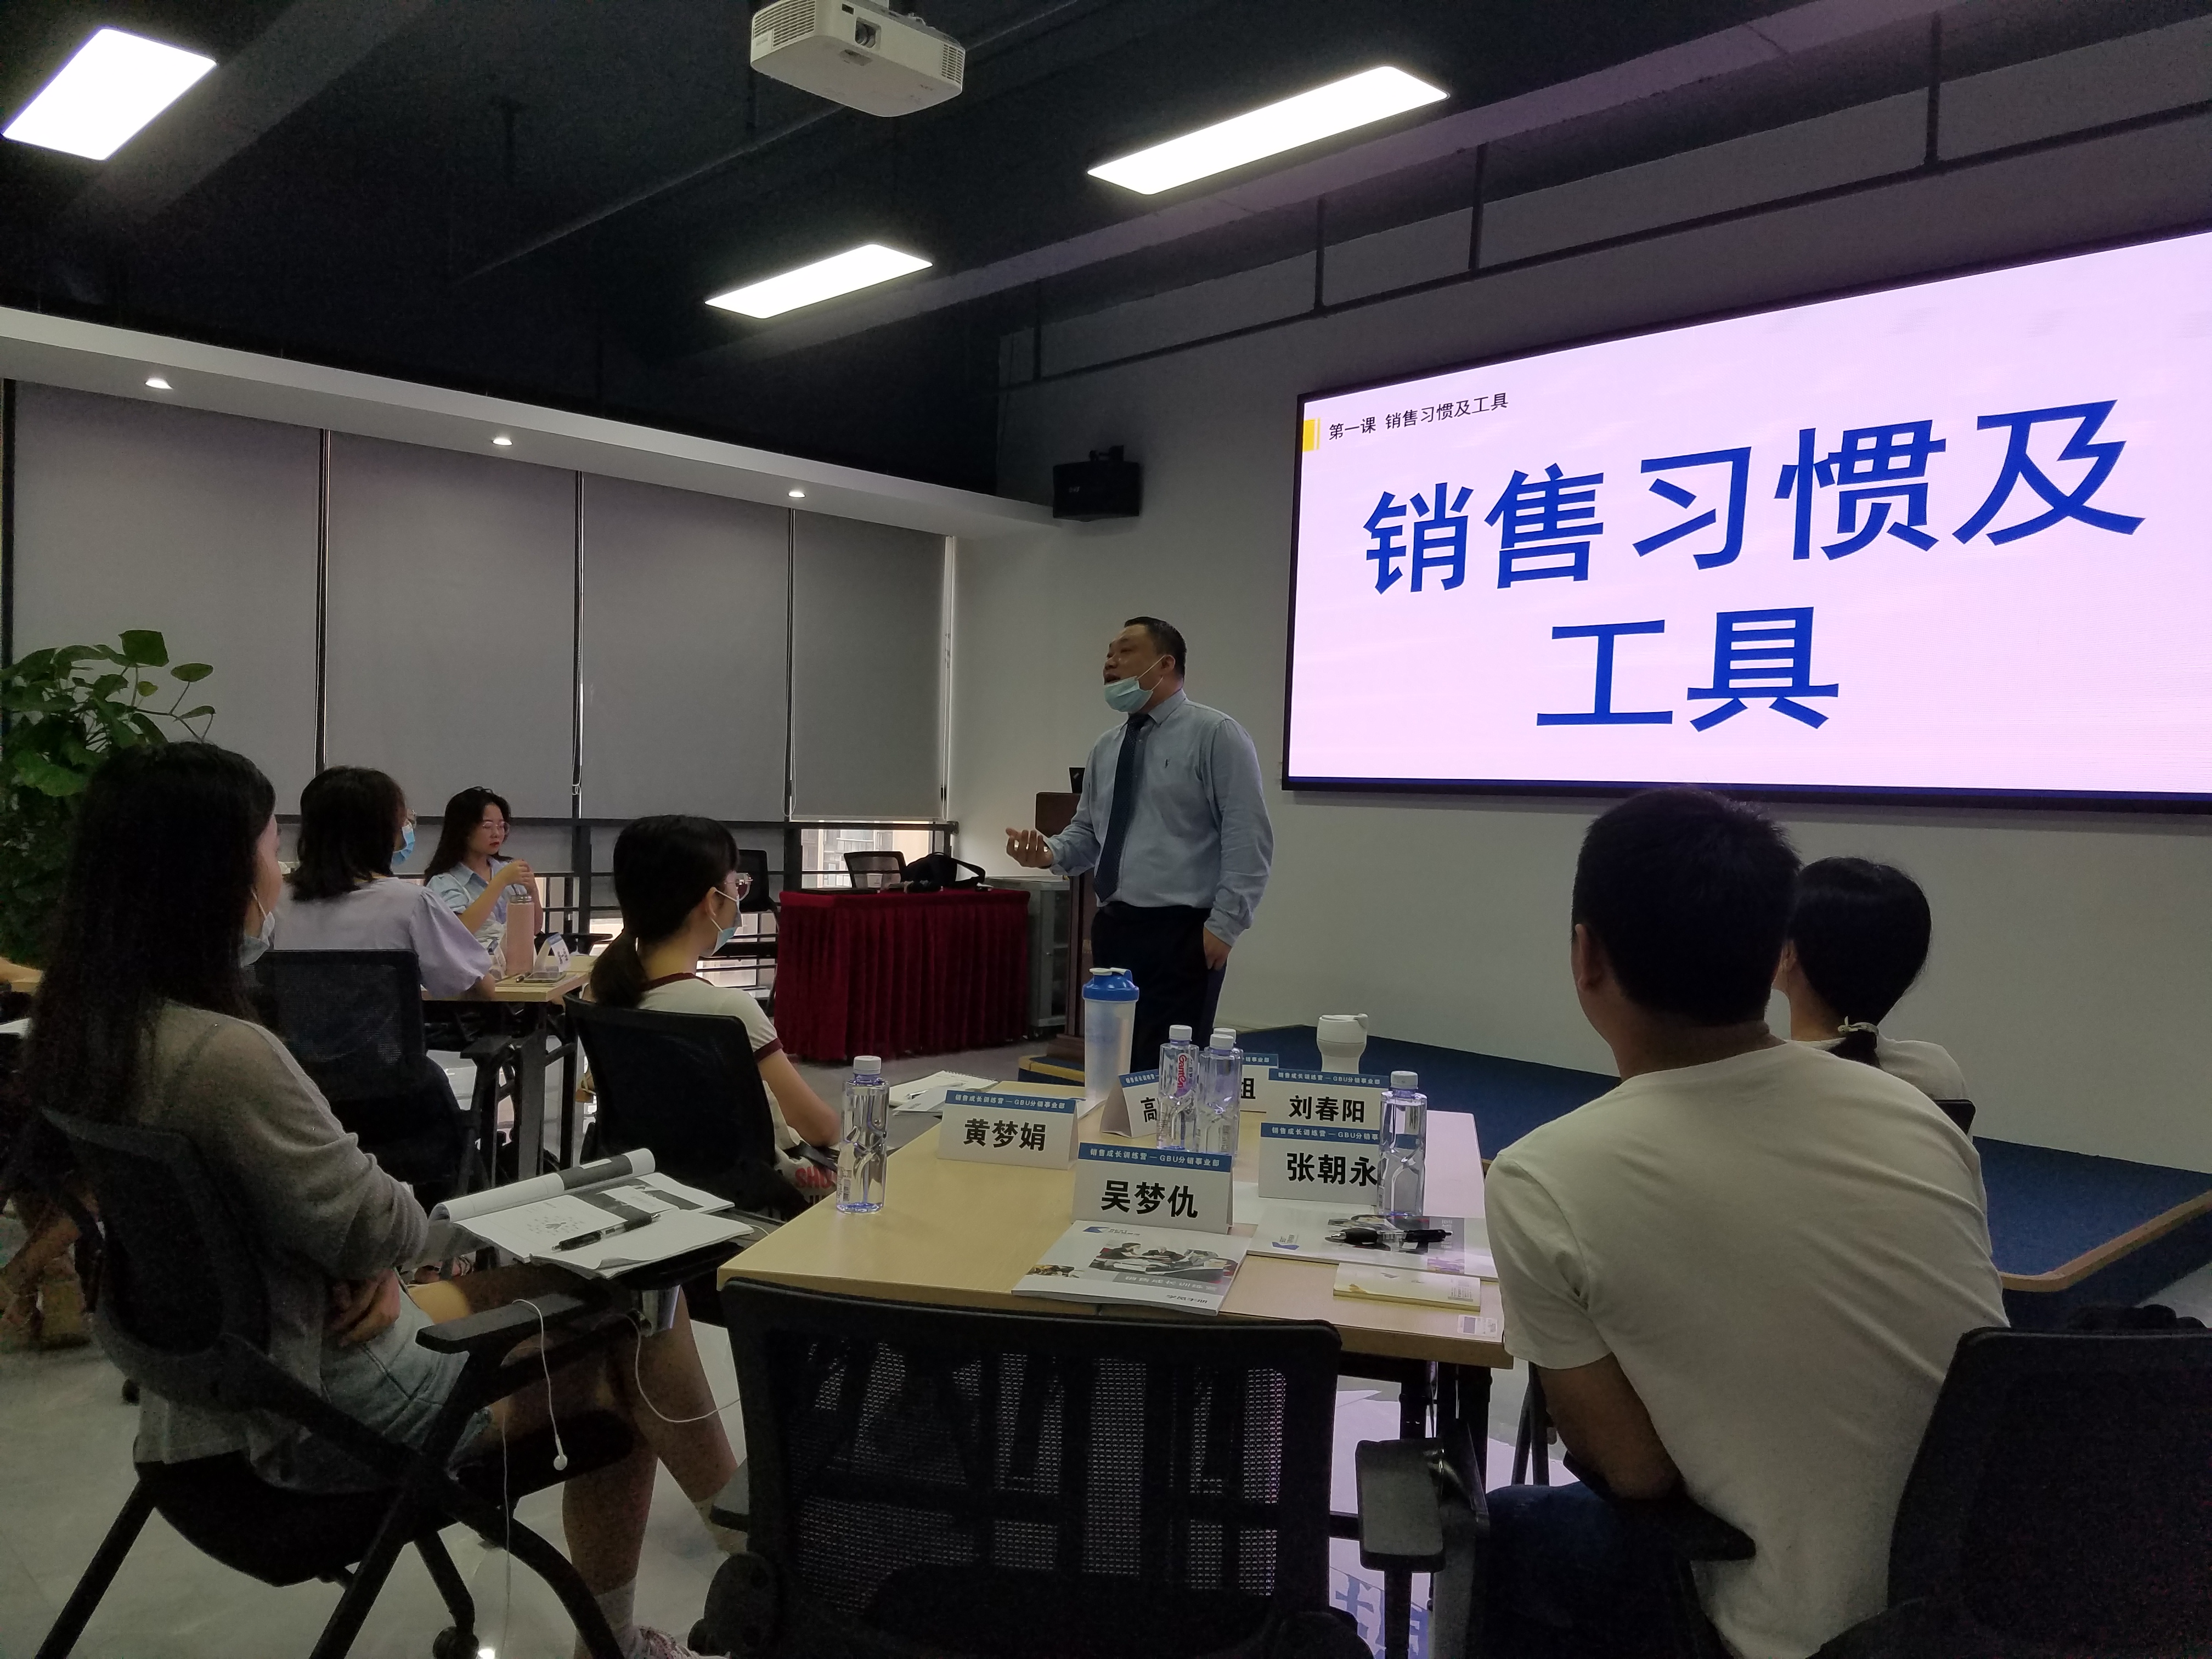  2020-07-26刘亮老师为福建纵腾网络有限公司讲授《销售拜访与谈判》课程